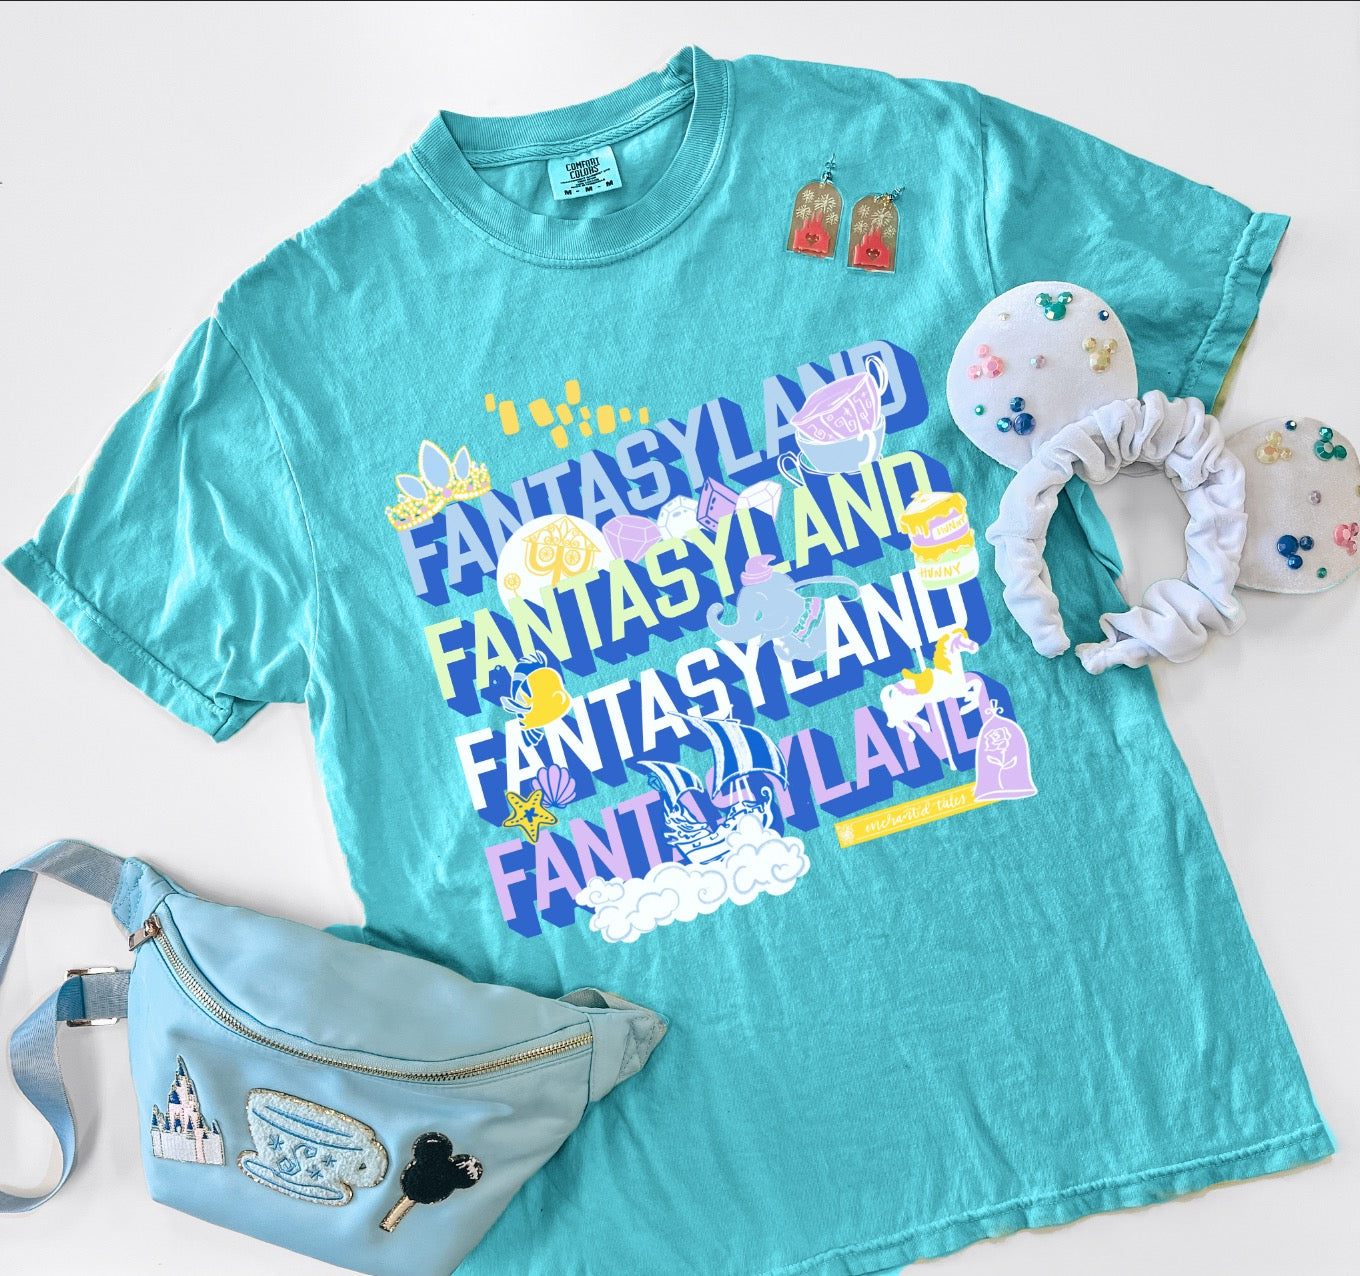 Fantasyland Tee - 2 Colors - L + XL